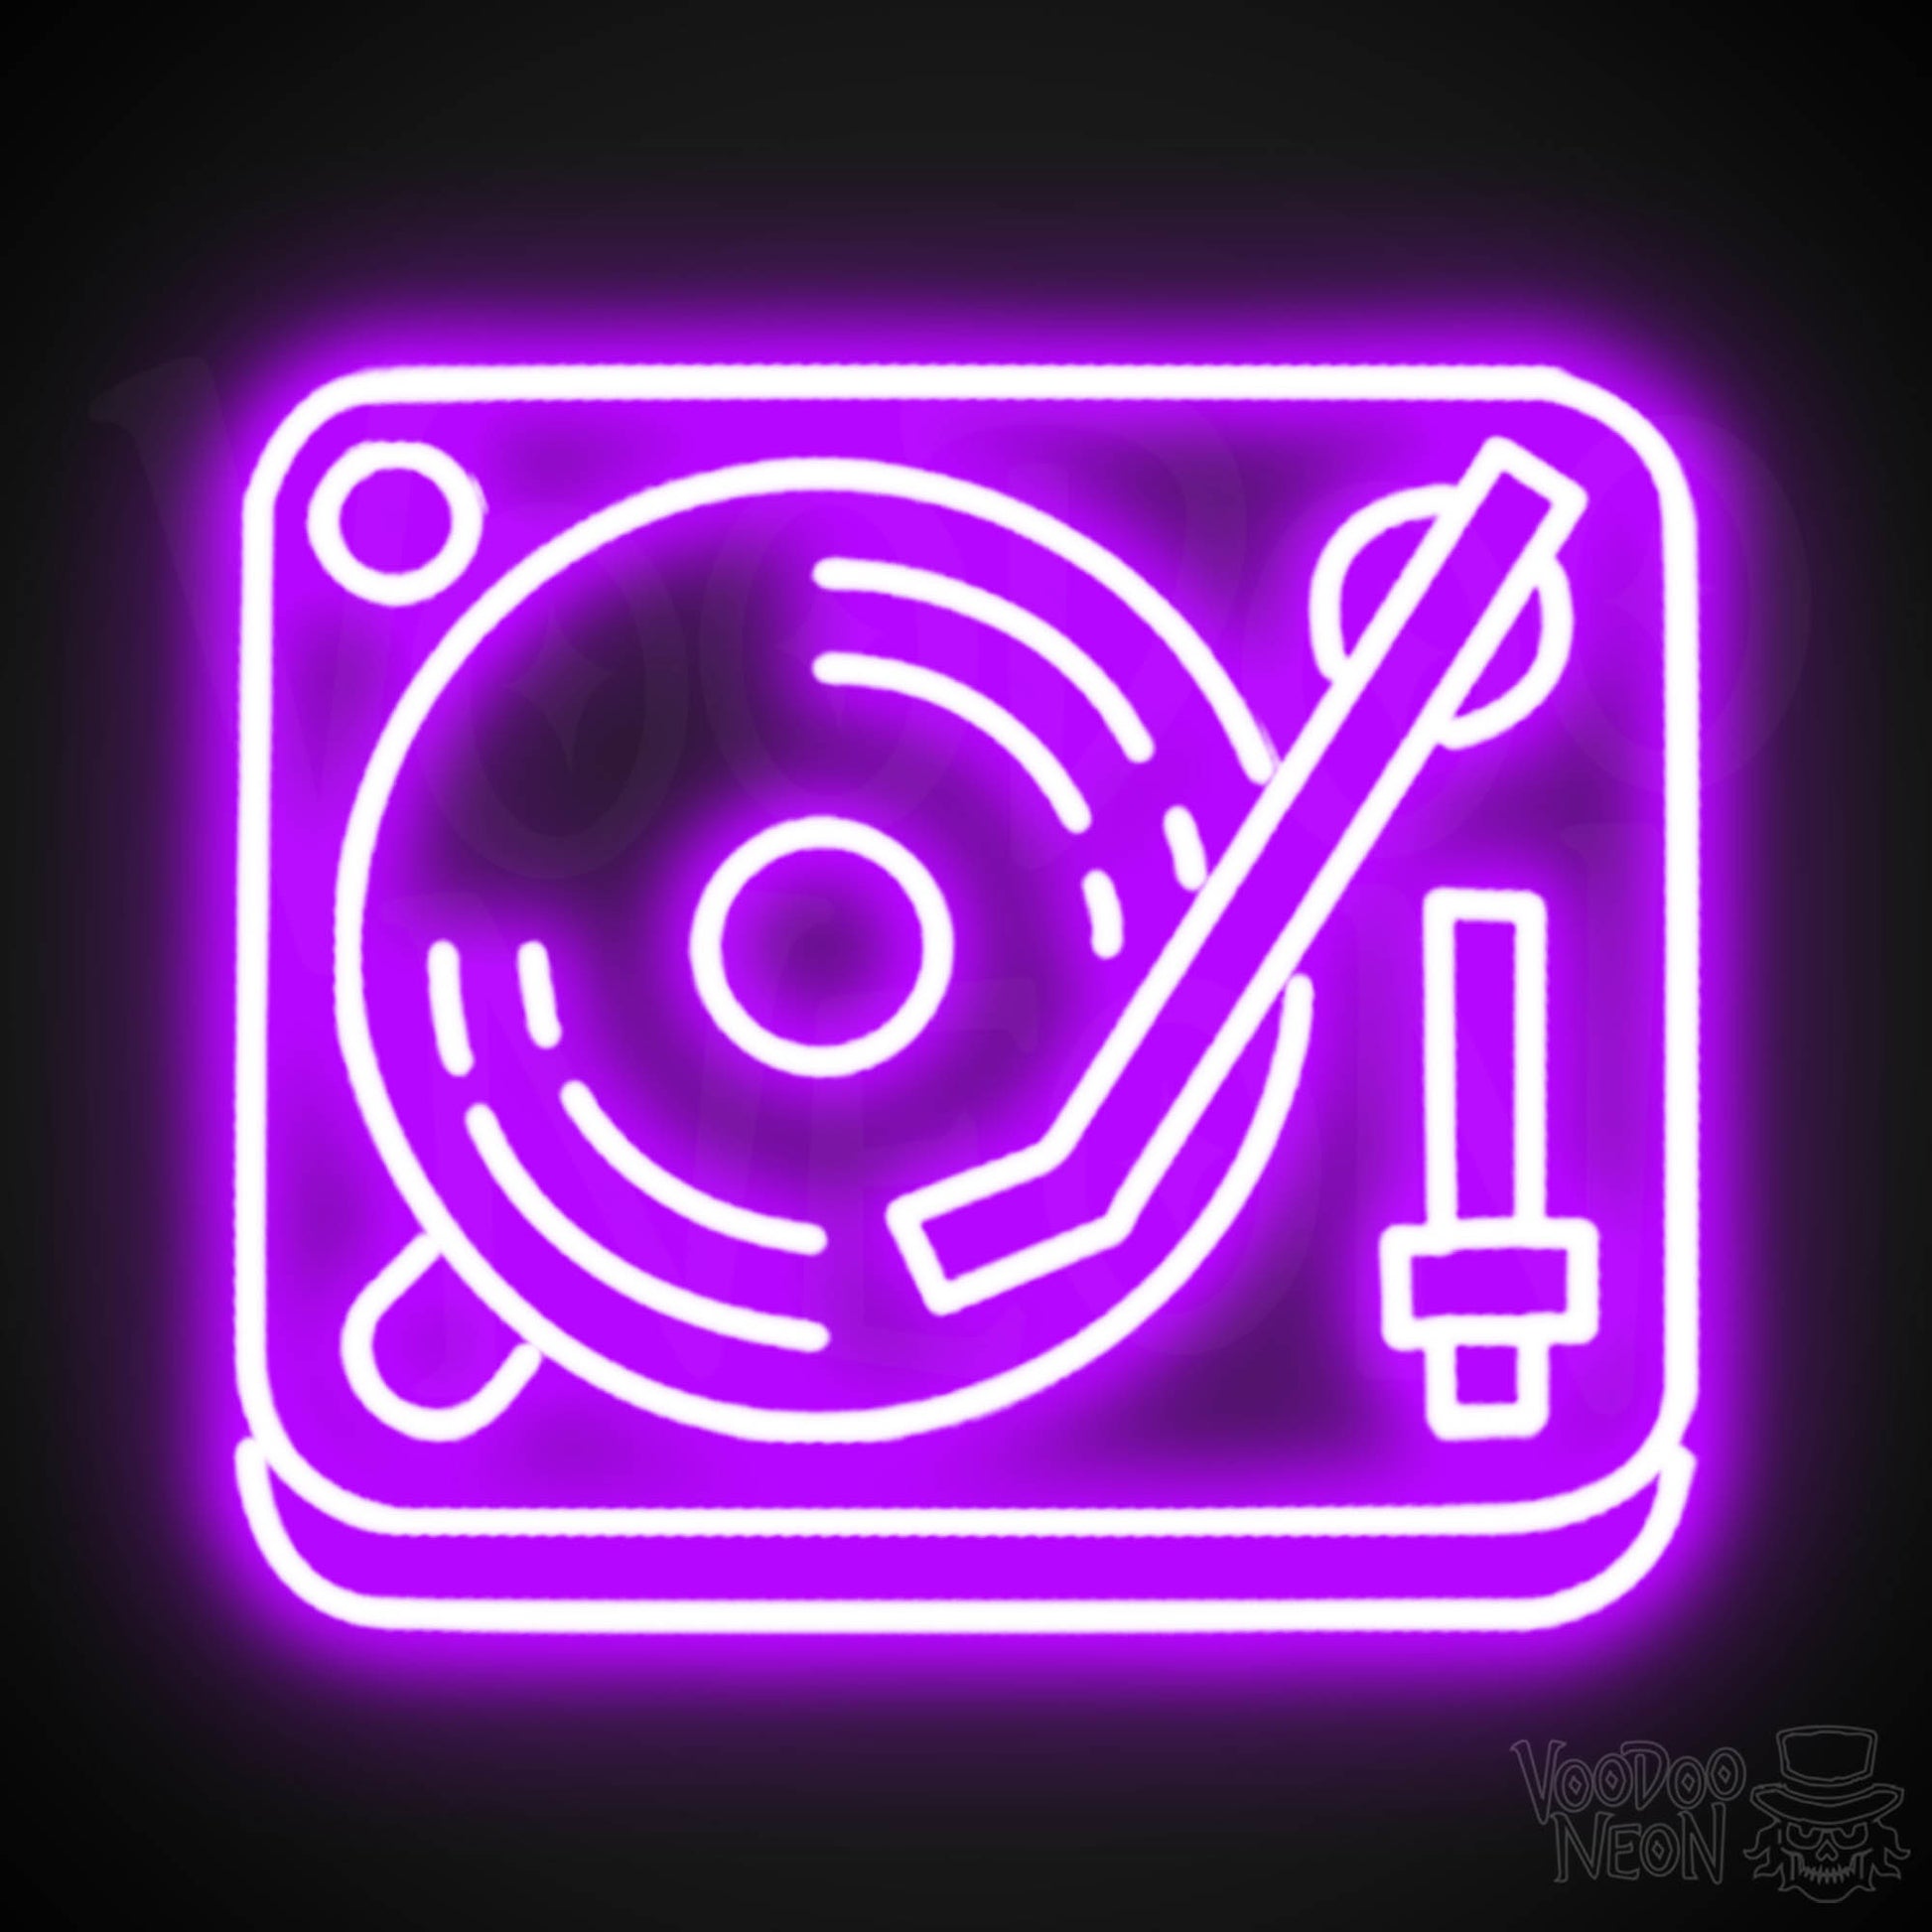 Retro Record Player Neon Sign - Record Player Neon Wall Art - Color Purple